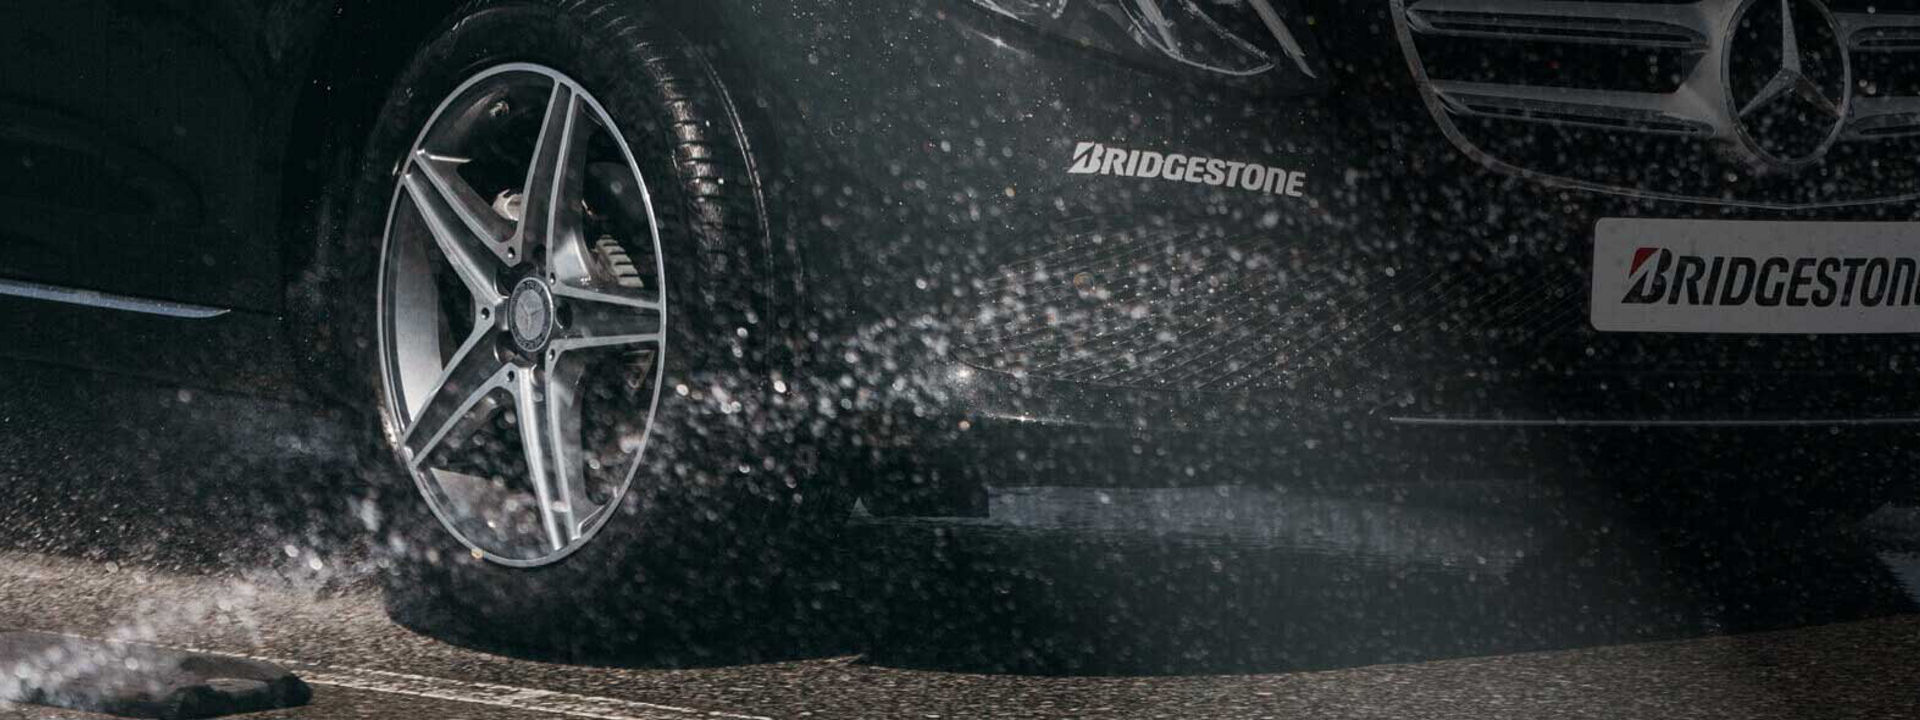 Această imagine este un prim-plan al unei anvelope Turanza Bridgestone rulând în condiții de umiditate